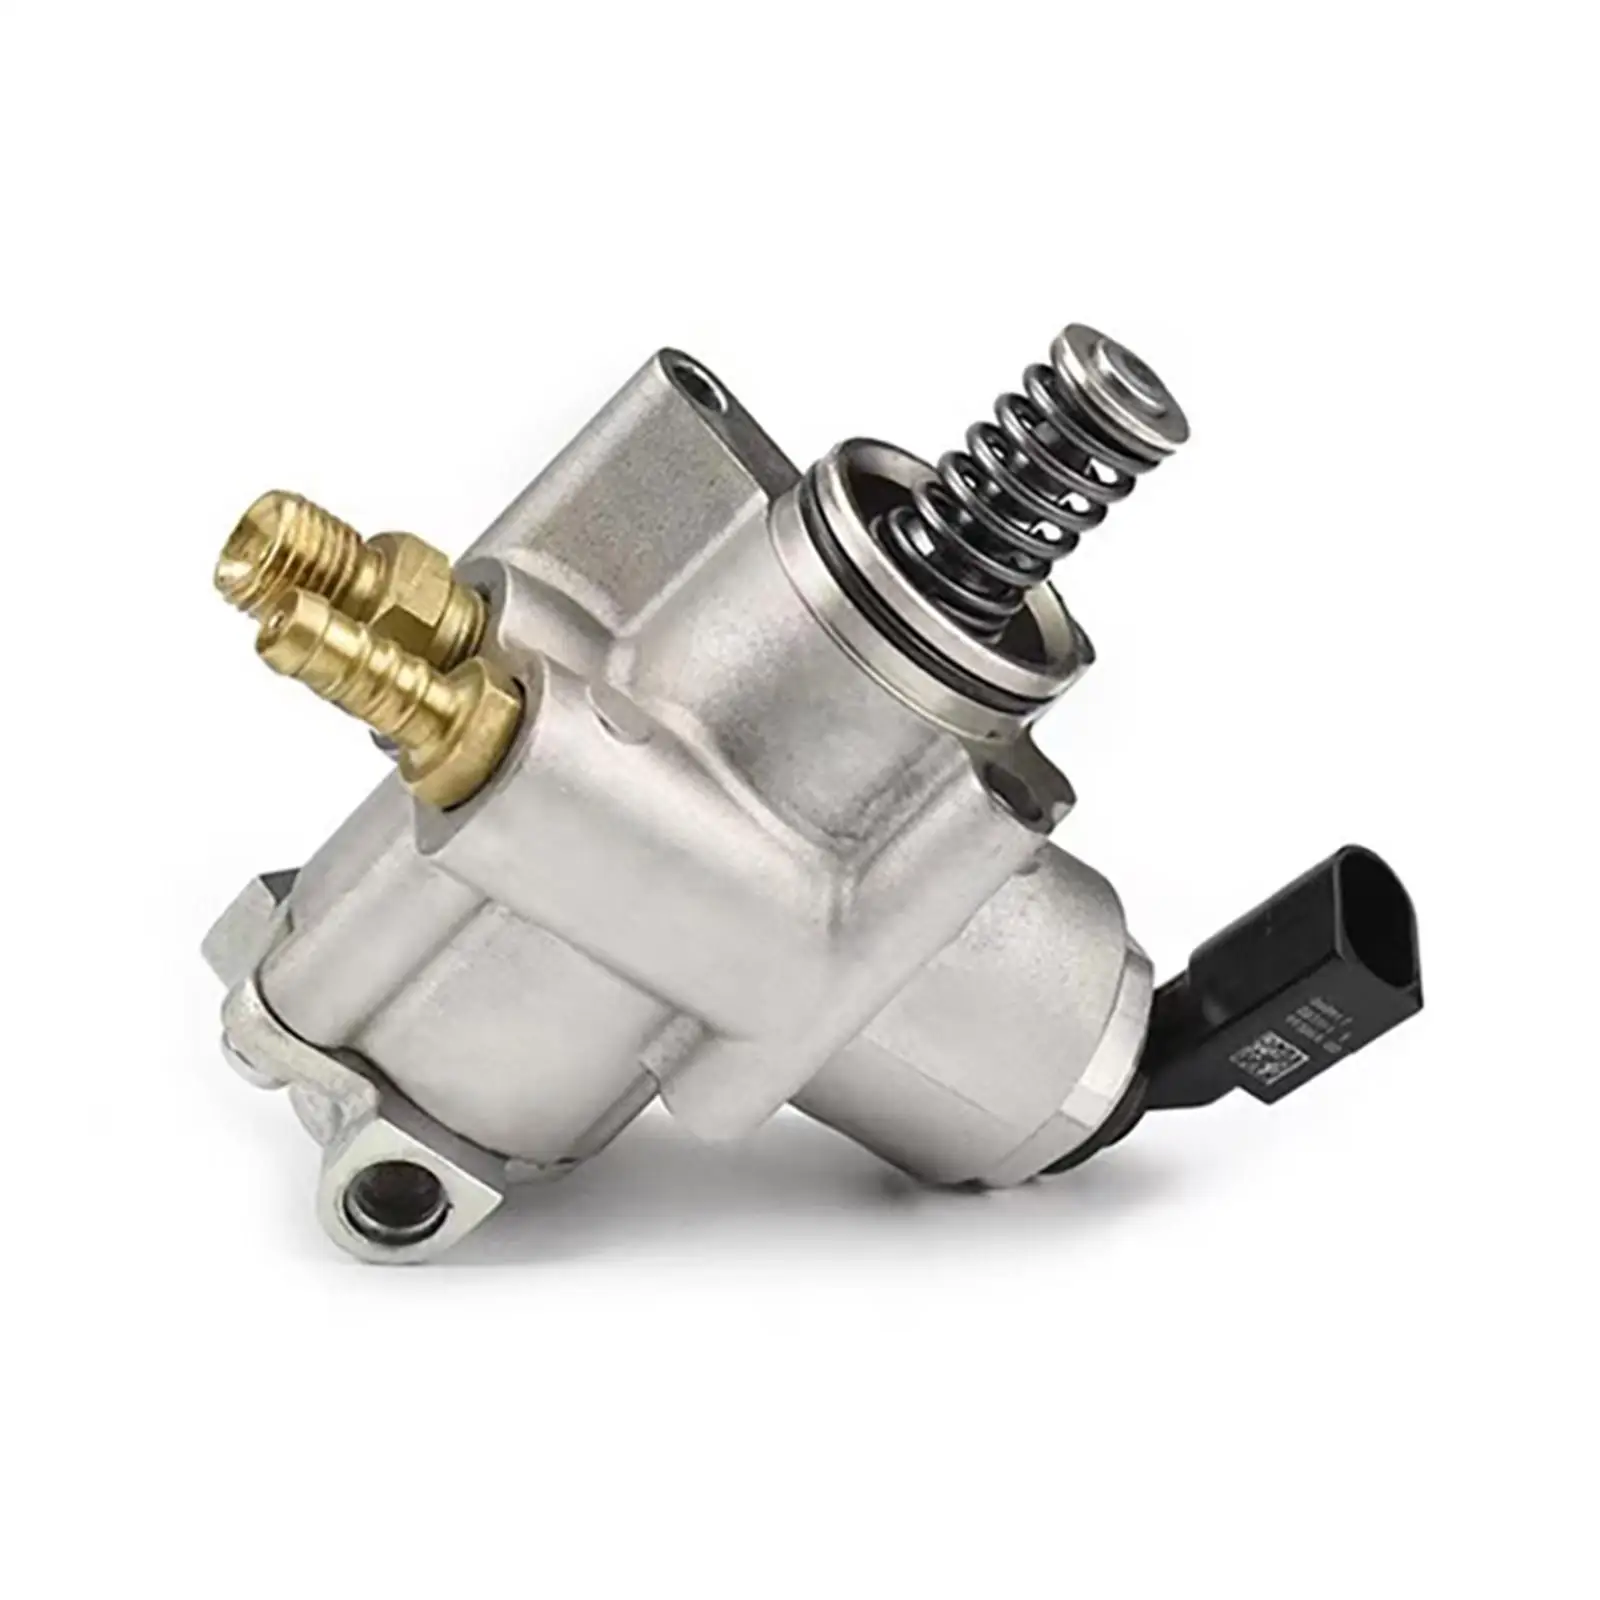 High Pressure Fuel Pump Rail Injector for Audi 2.0 TFSI Engine 06F127025B 06F127025J HFS853102B HFS853A108 Parts